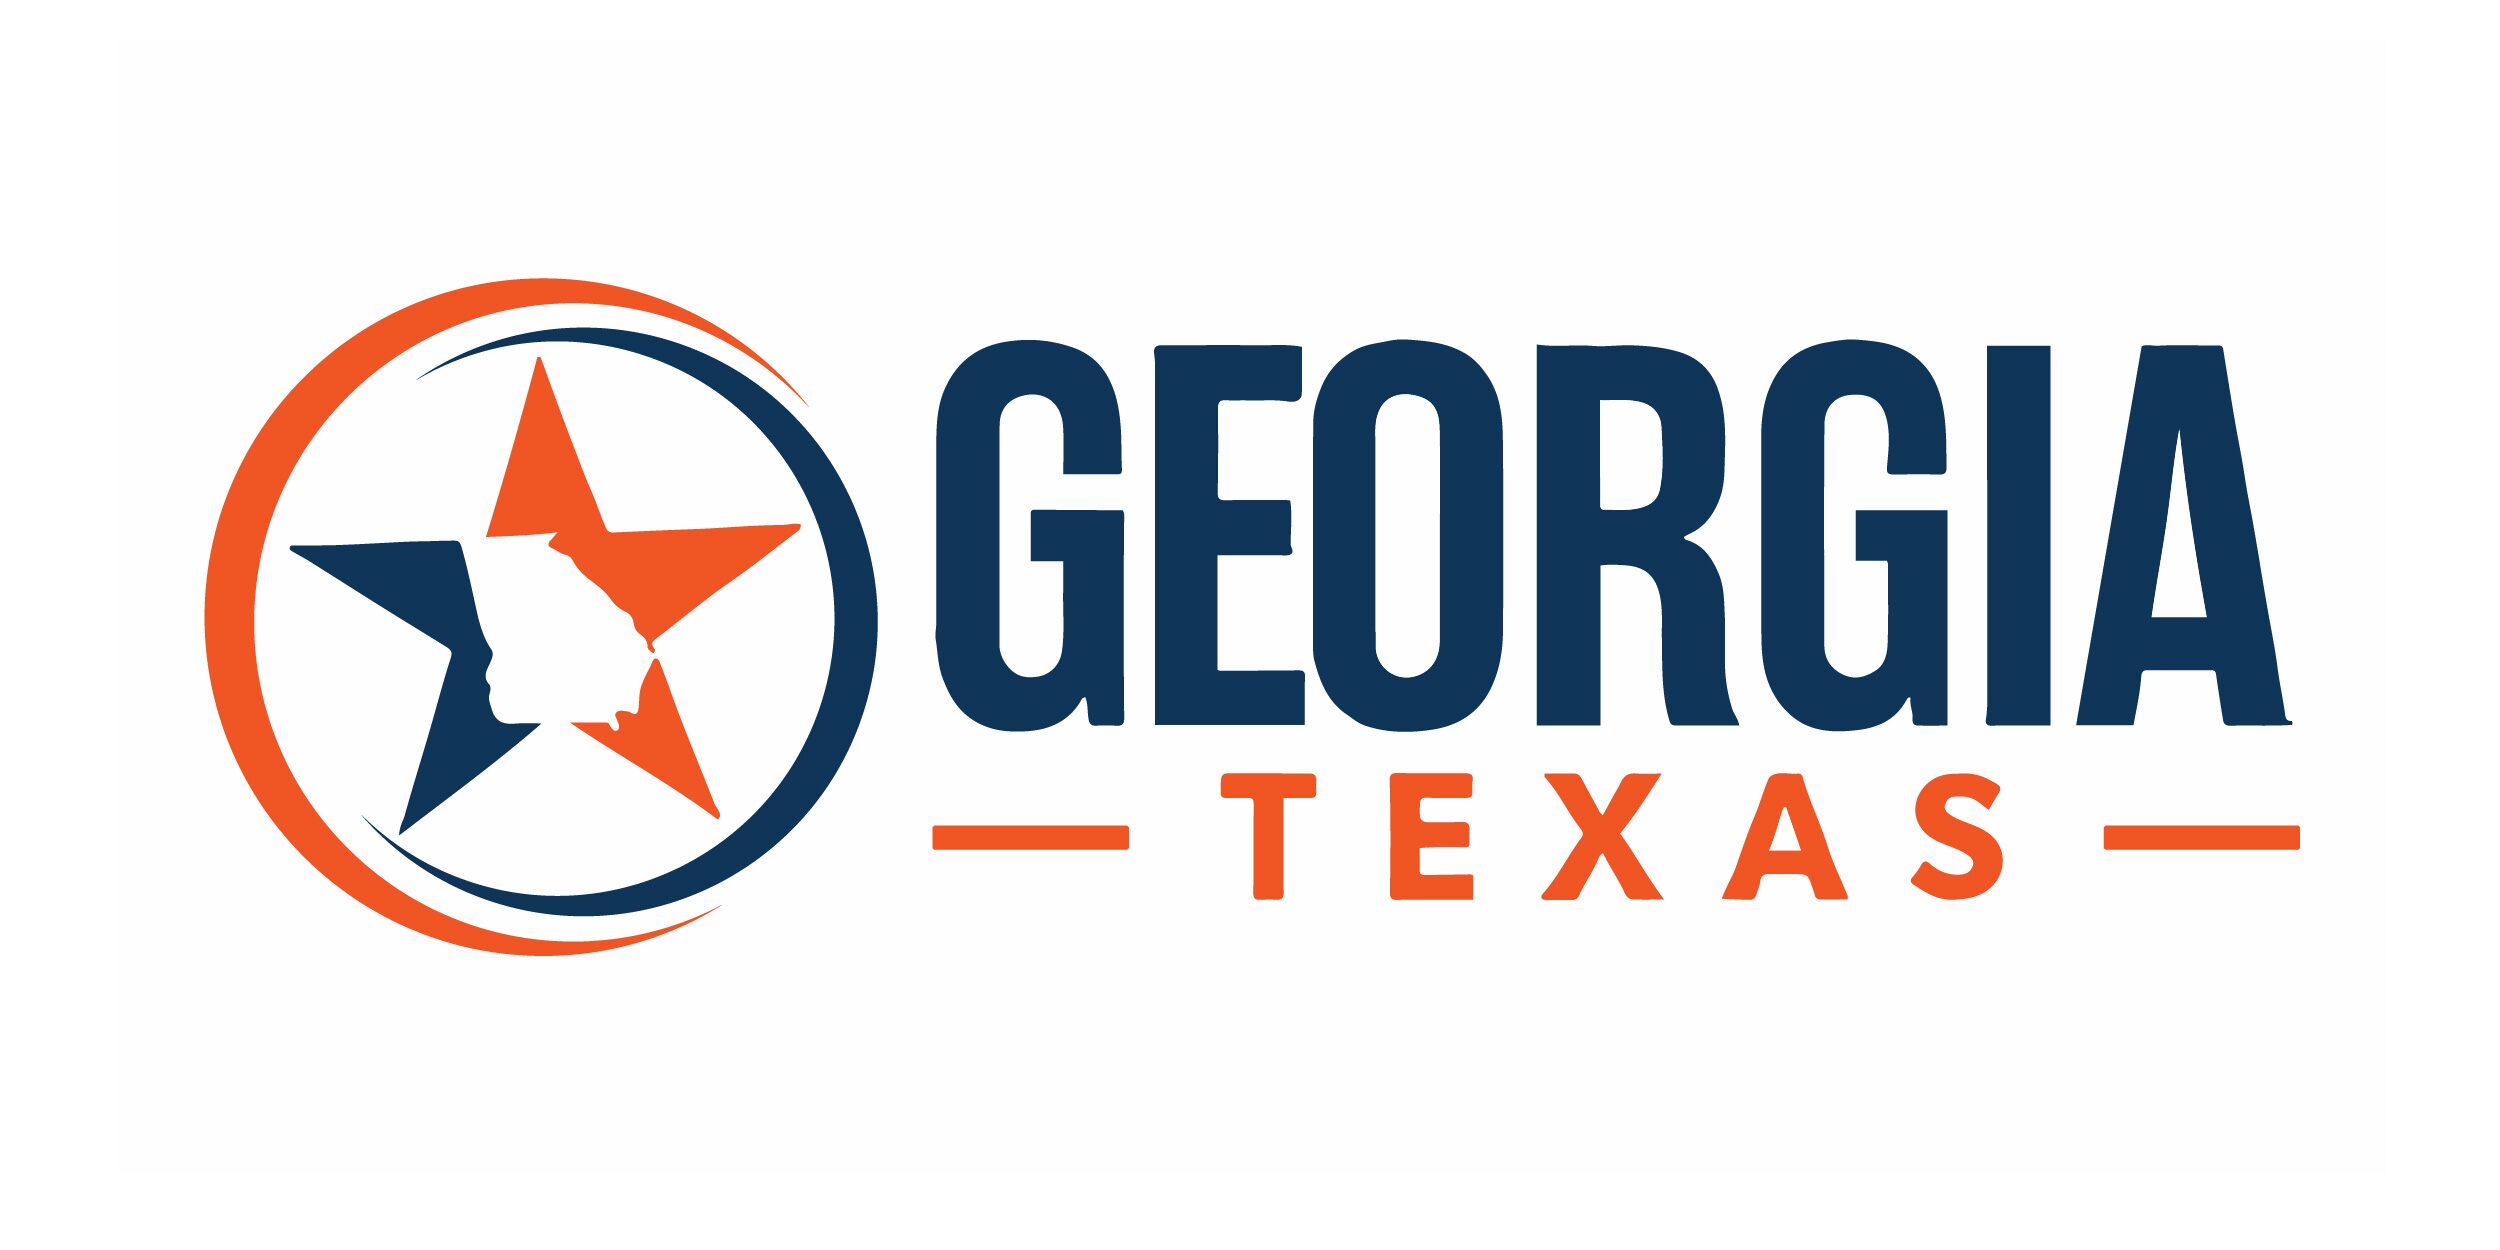 georgia texas enterprises logo